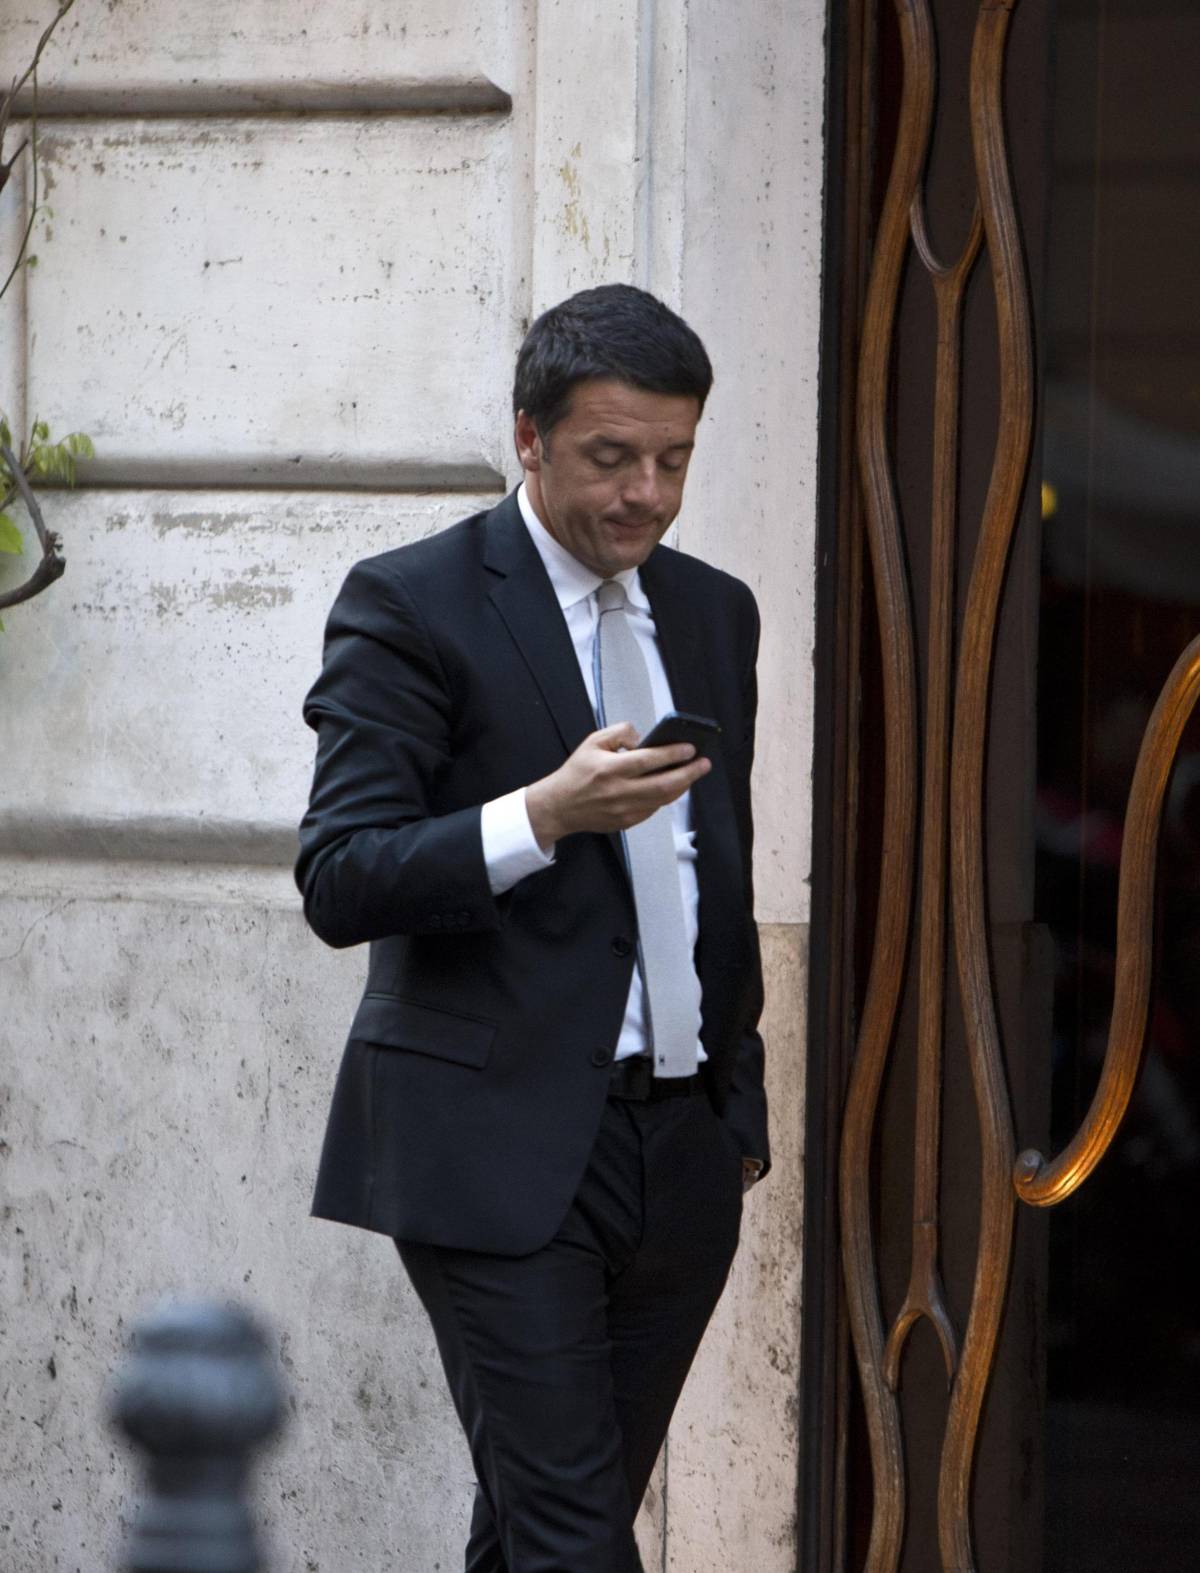 Le svendite di Renzi fanno perdere in Borsa